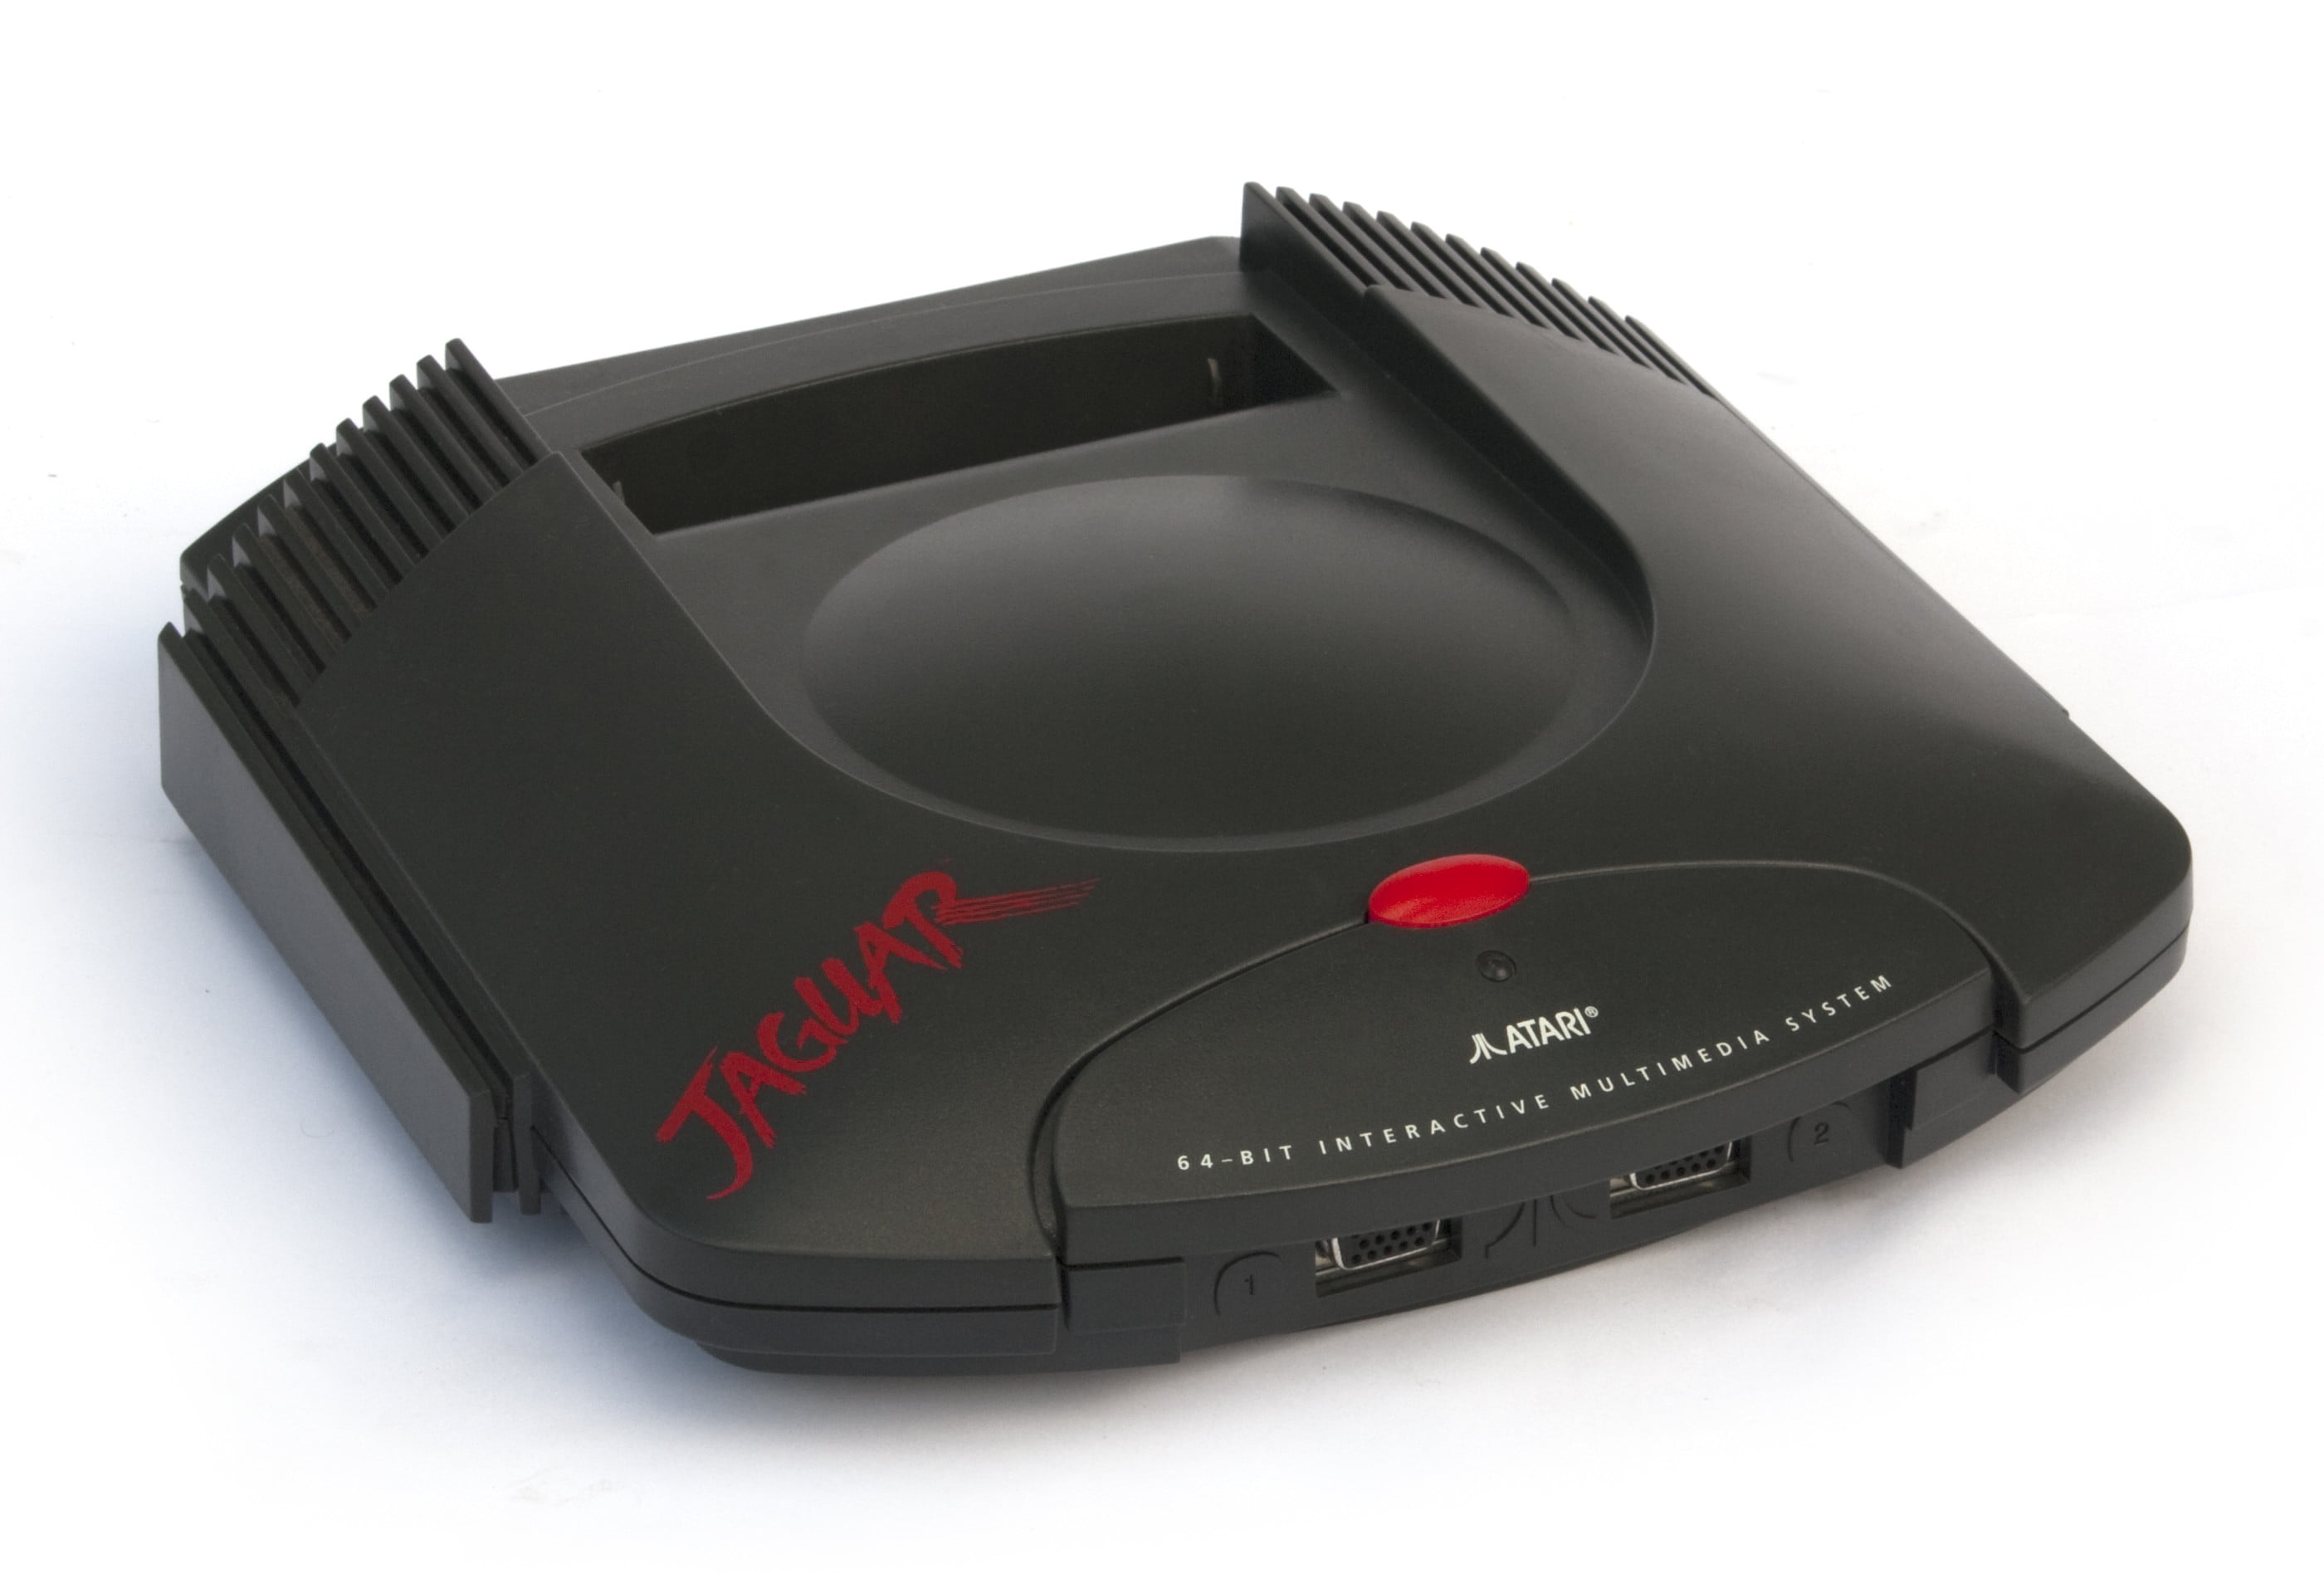 jaguar game console